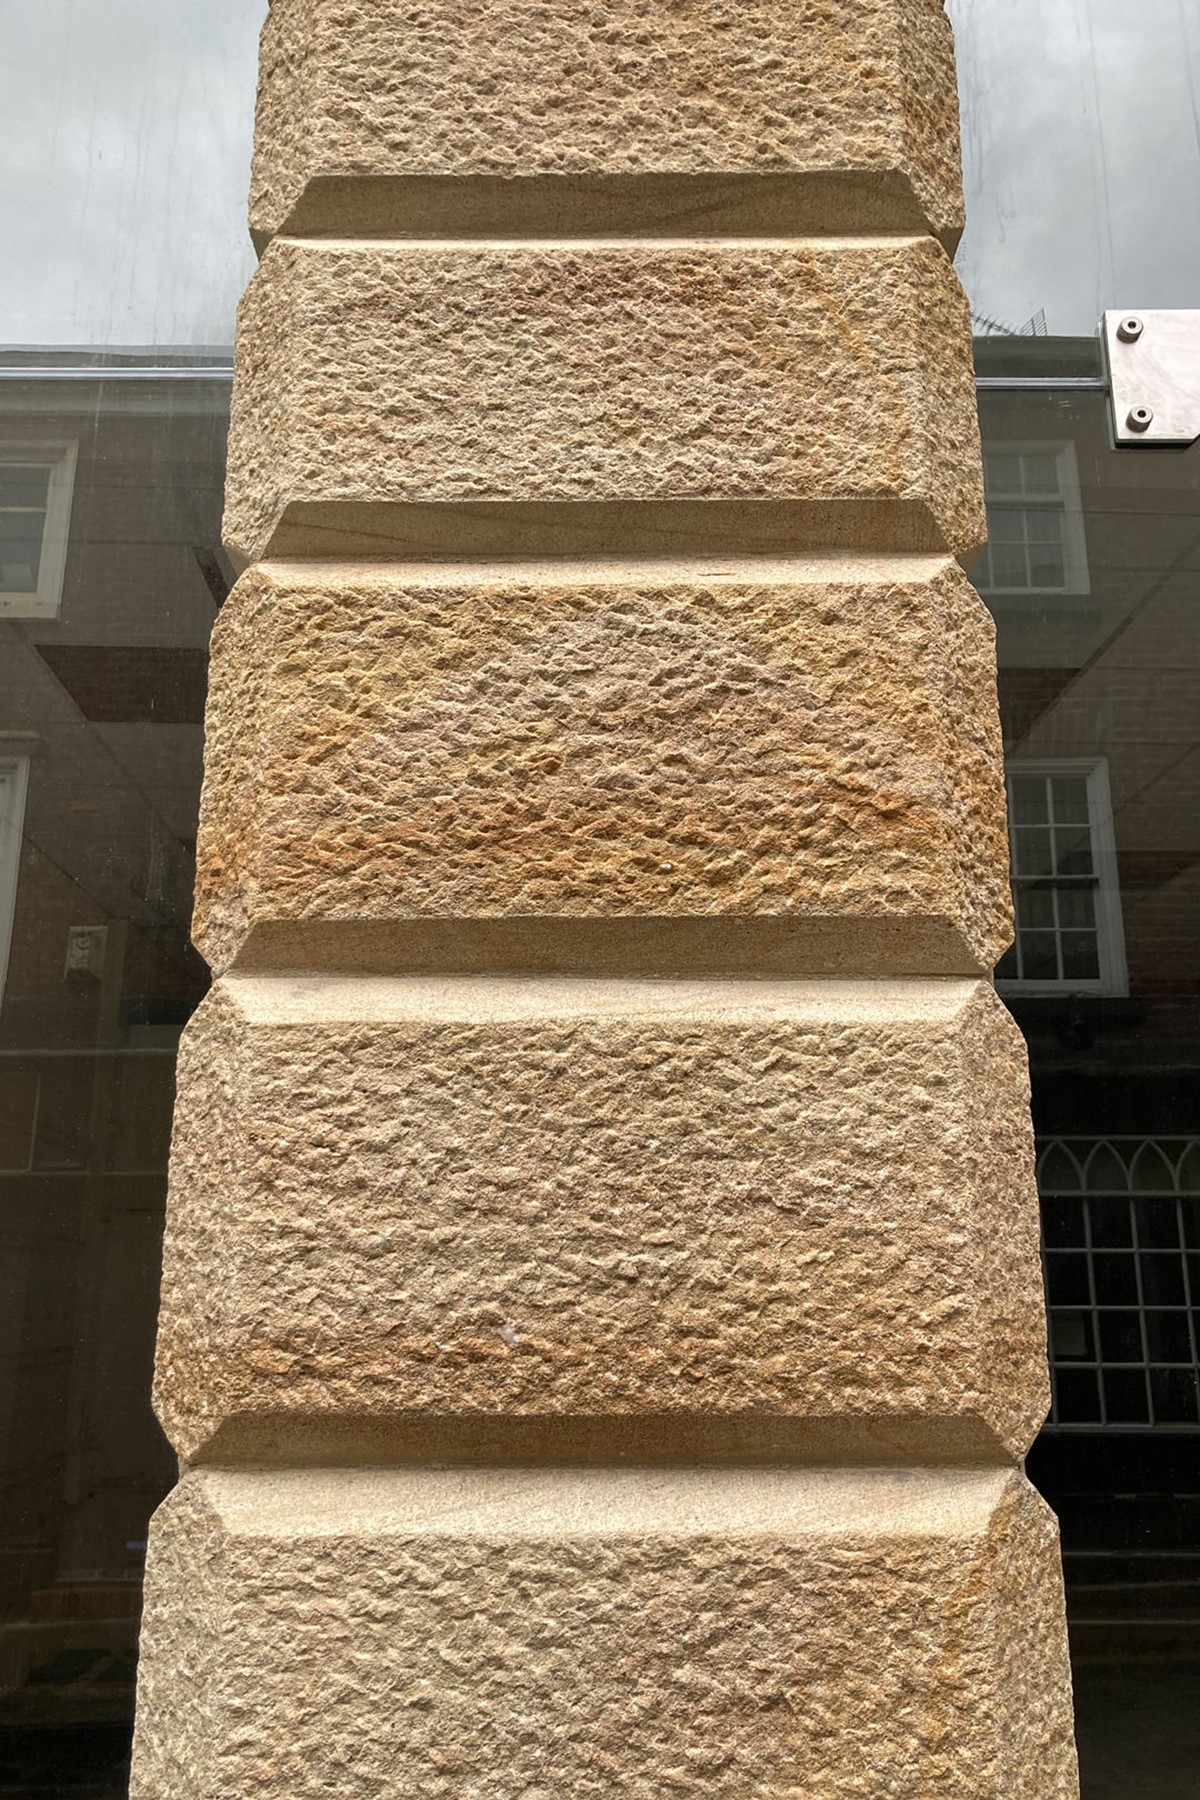 Mustard Coworking. External stone masonry. Kelsall Architects.